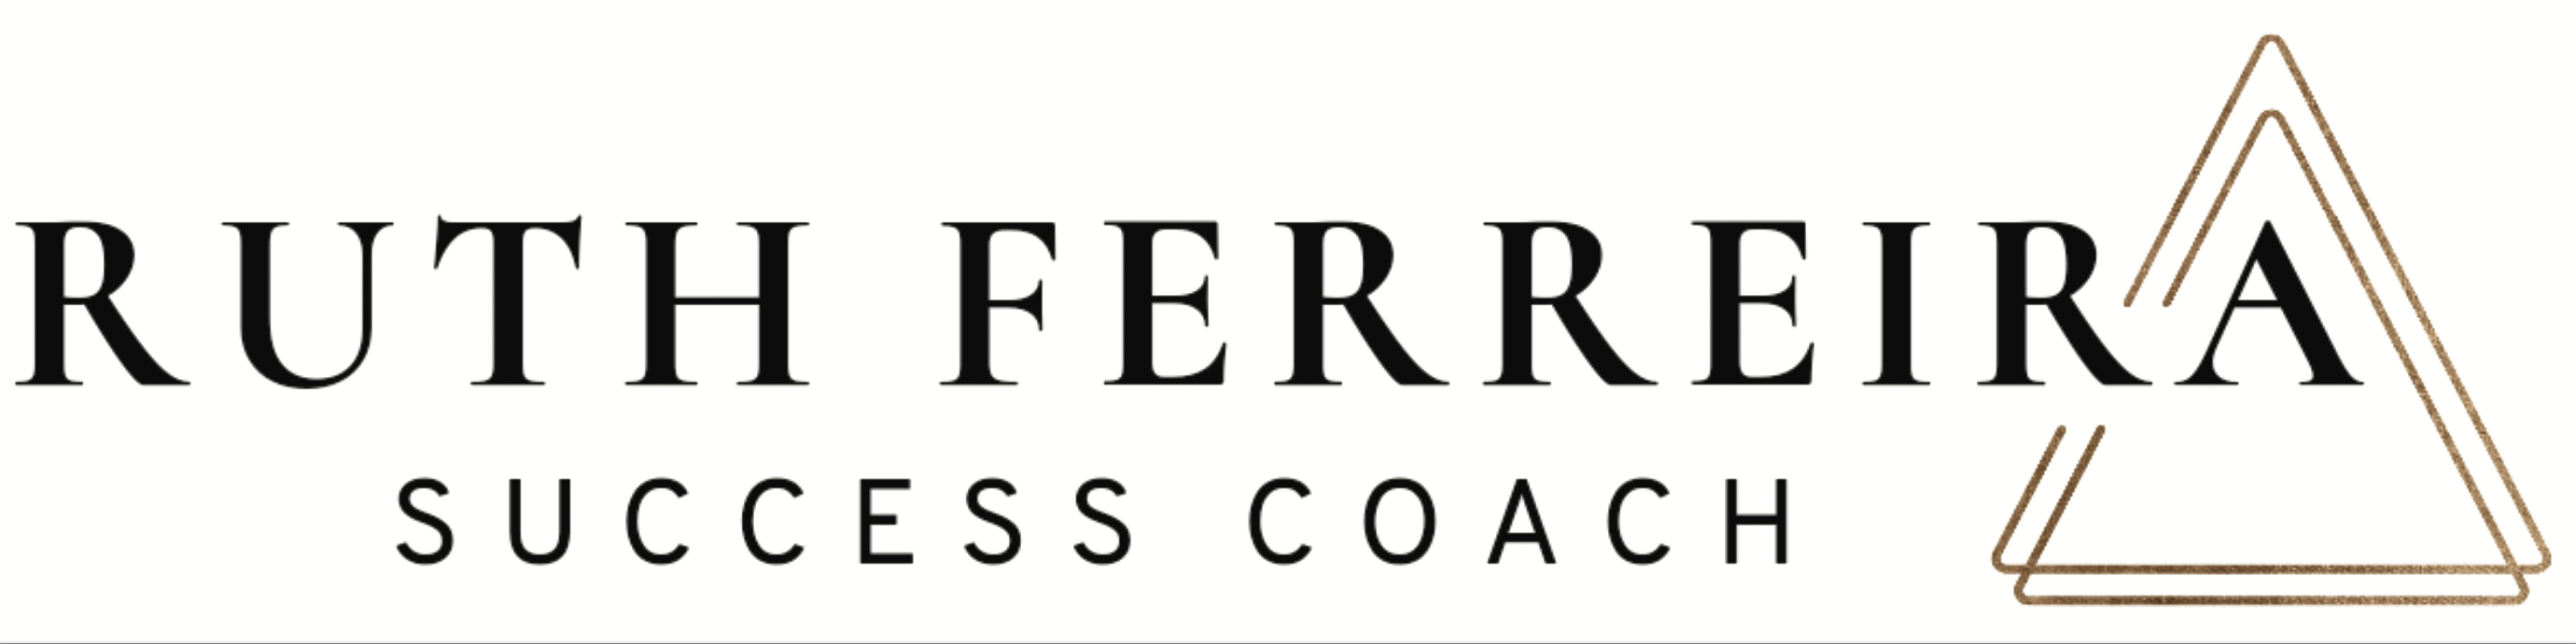 Ruth Ferreira Coaching logo